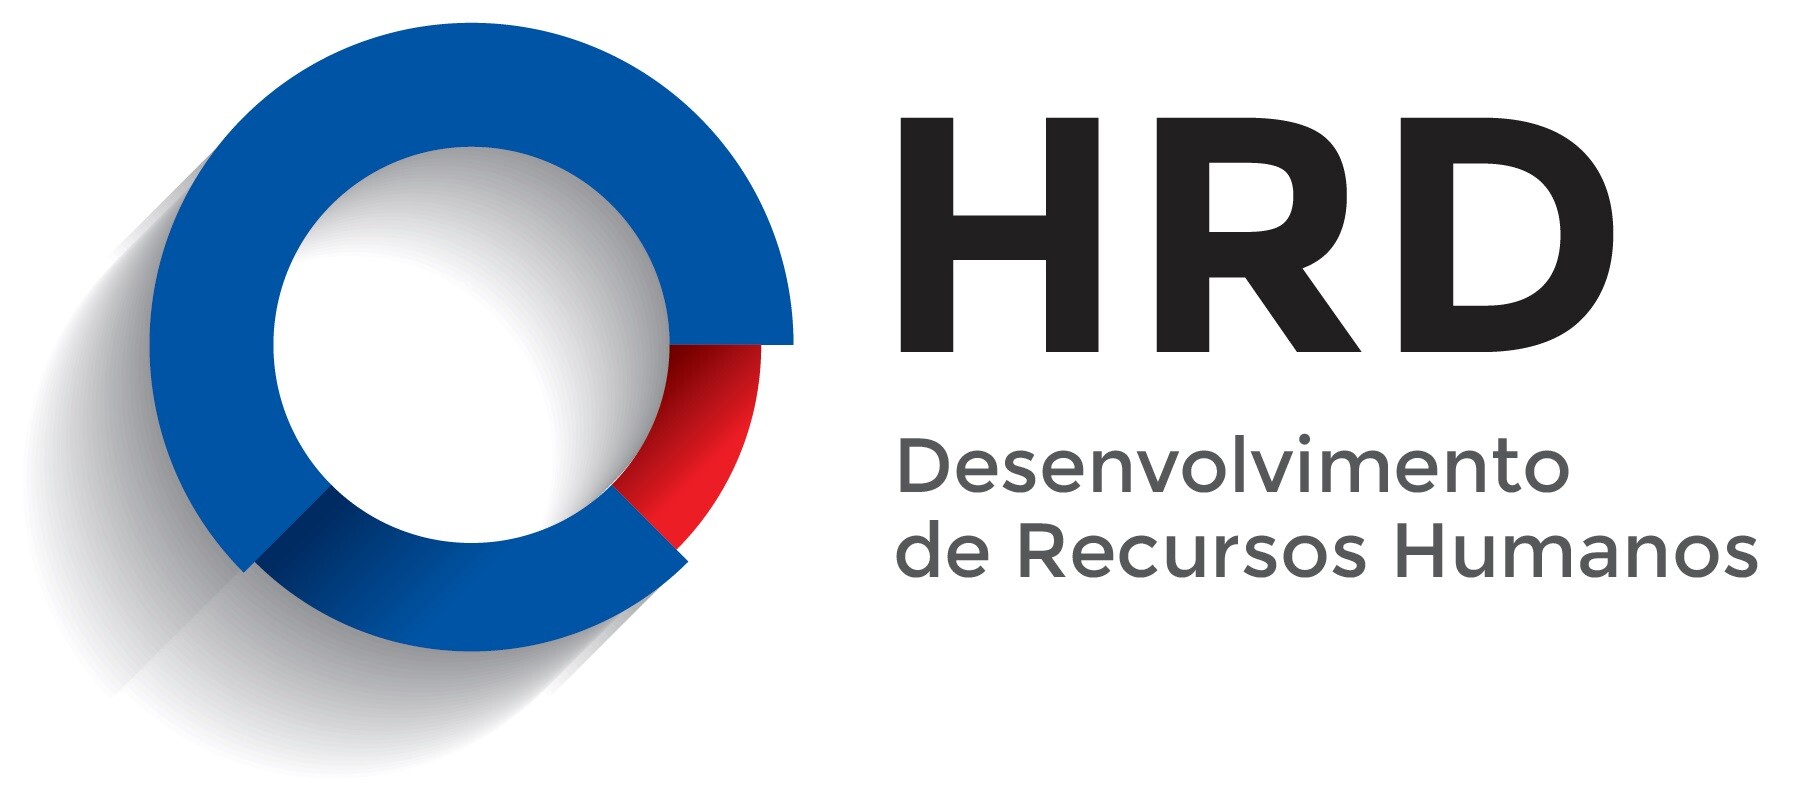 HRD – Desenvolvimento de Recursos Humanos